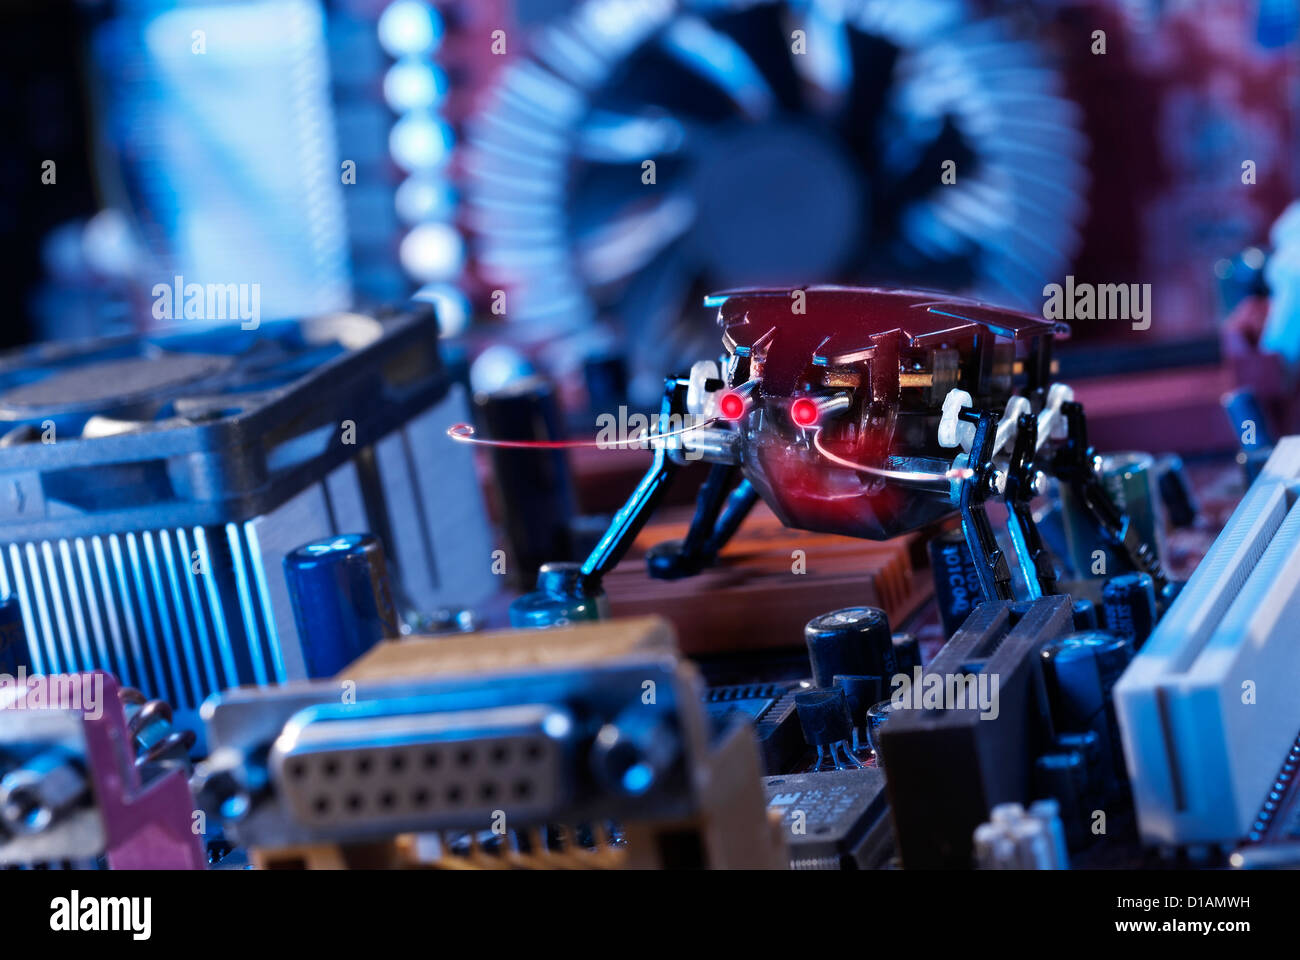 Un robot escarabajo rojo con los ojos brillantes en una motherboard. Foto de stock